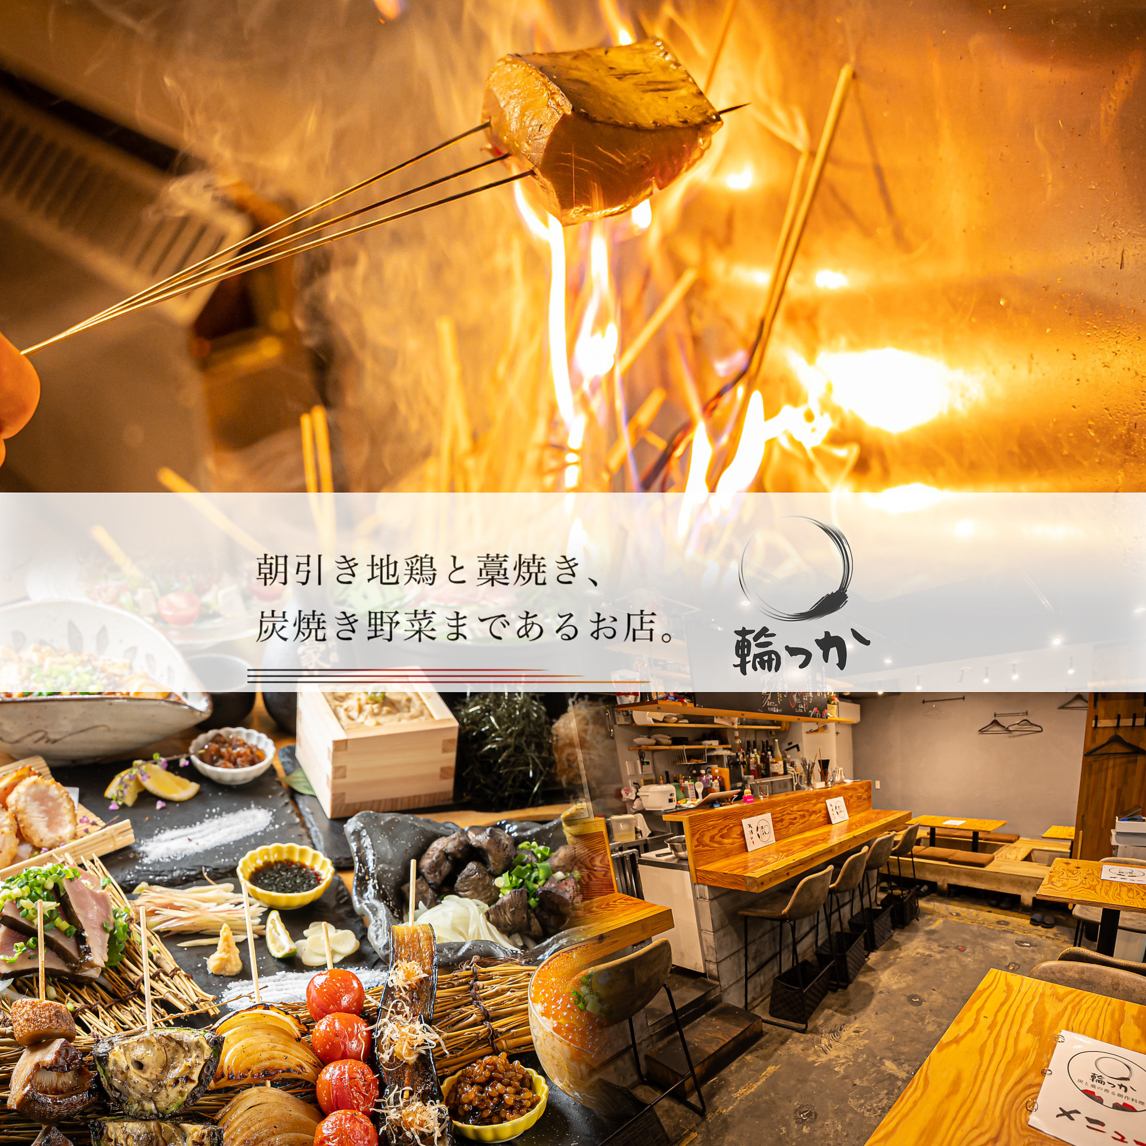 京橋駅から徒歩3分 | 朝引き地鶏と藁焼き、炭火焼き野菜が味わえる創作居酒屋☆